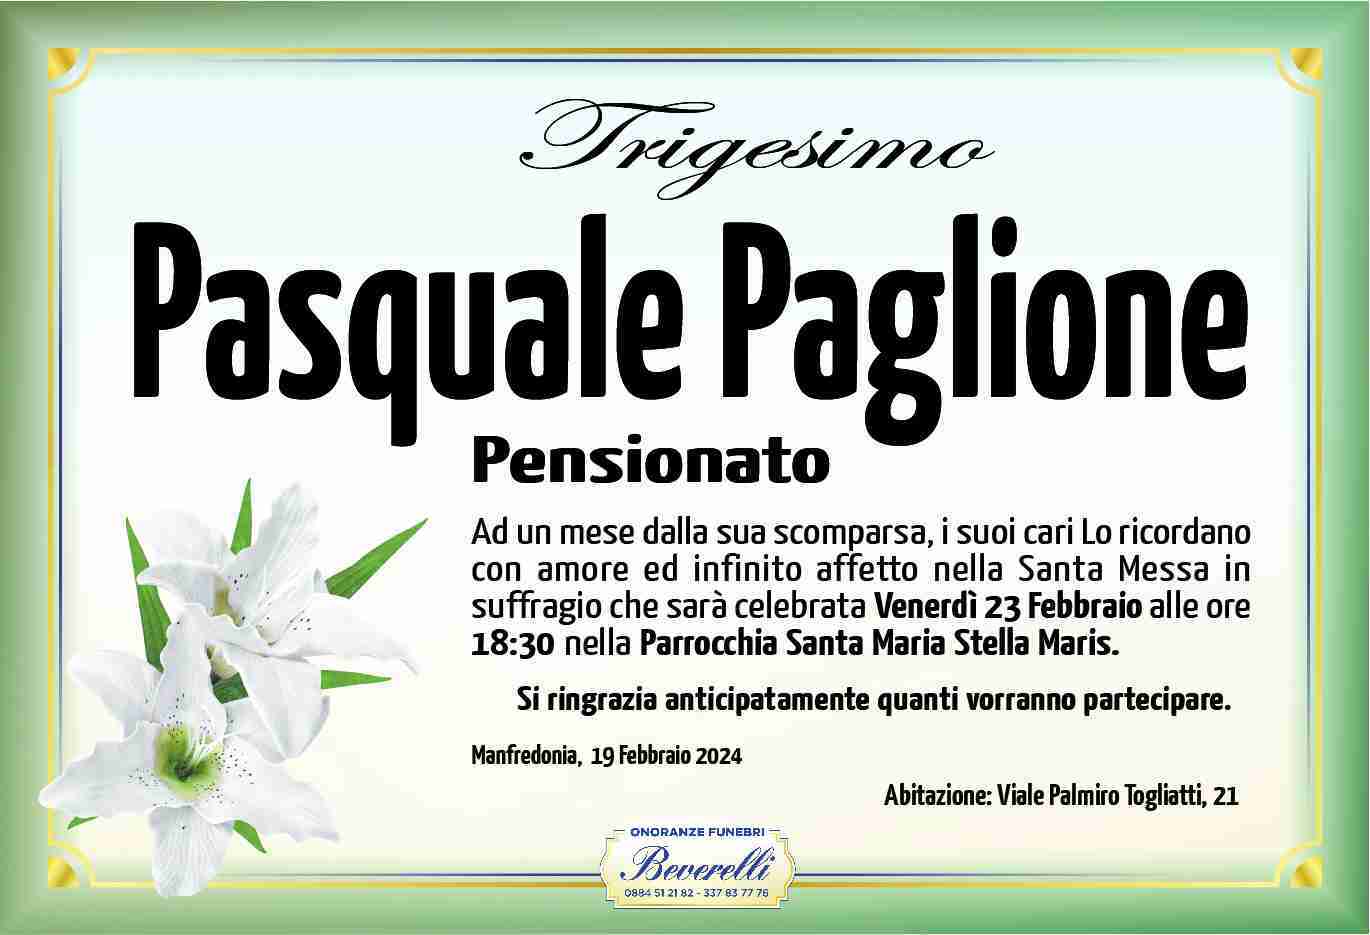 Pasquale Paglione